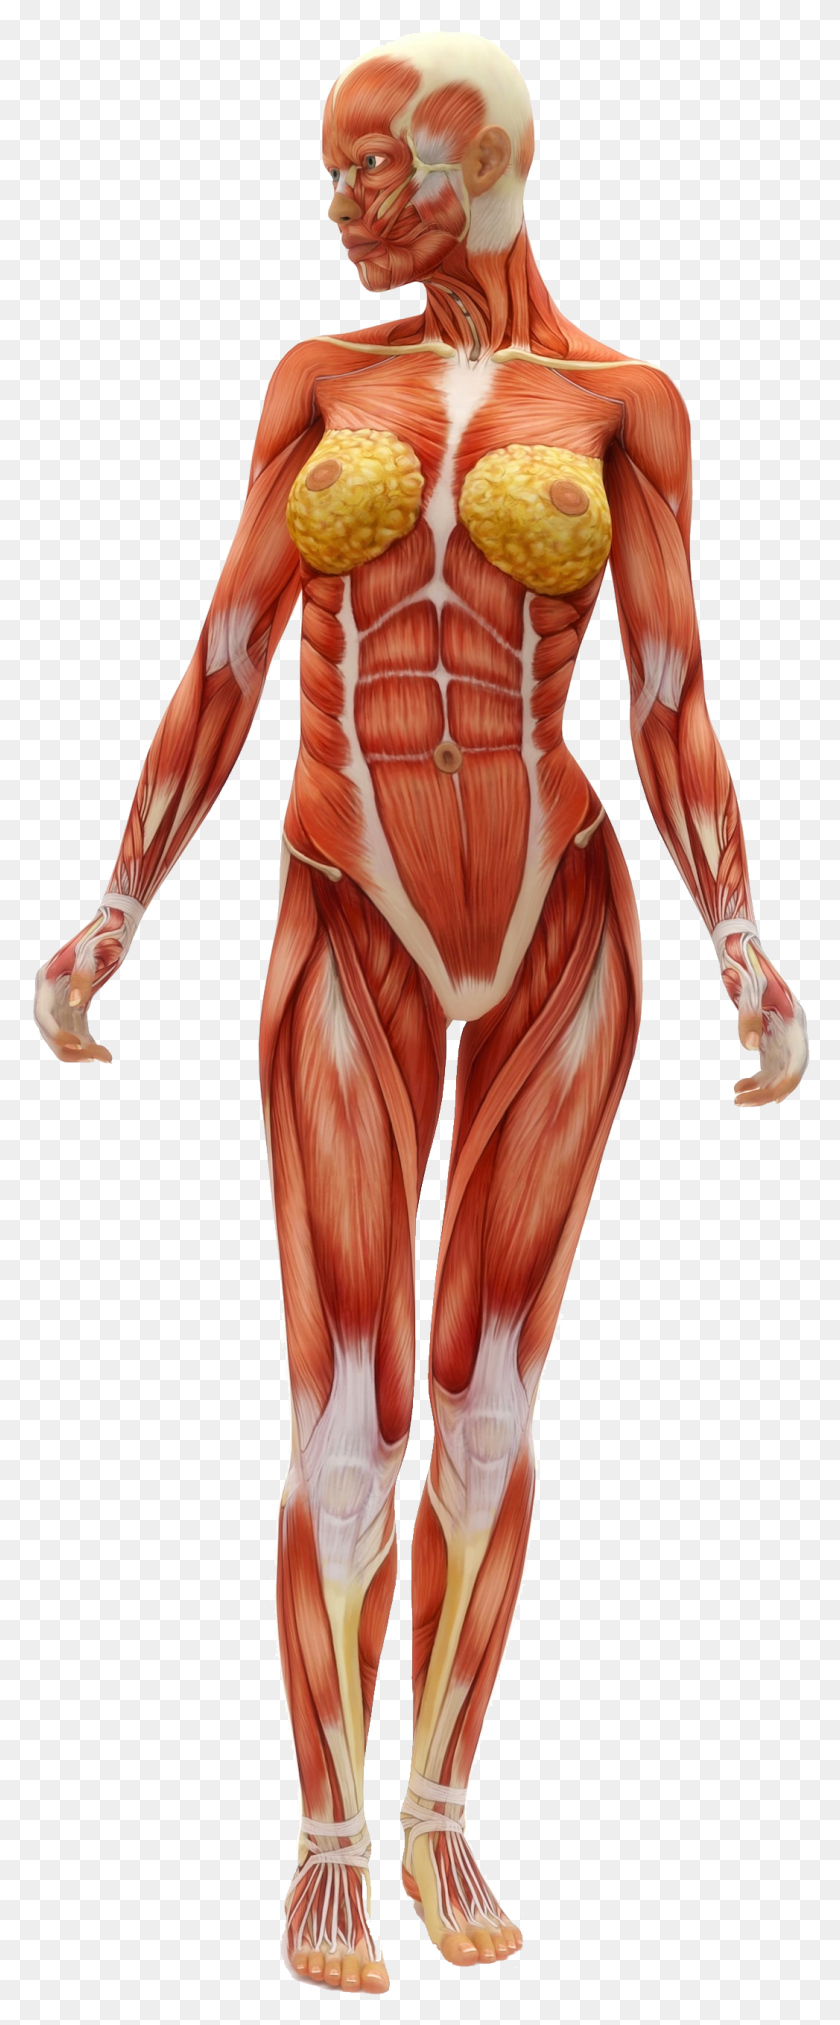 1047x2638 Descargar Png El Genio De La Flexibilidad Estira El Intestino Delgado Muchos Músculos En El Cuerpo Humano, Persona, Venas Hd Png